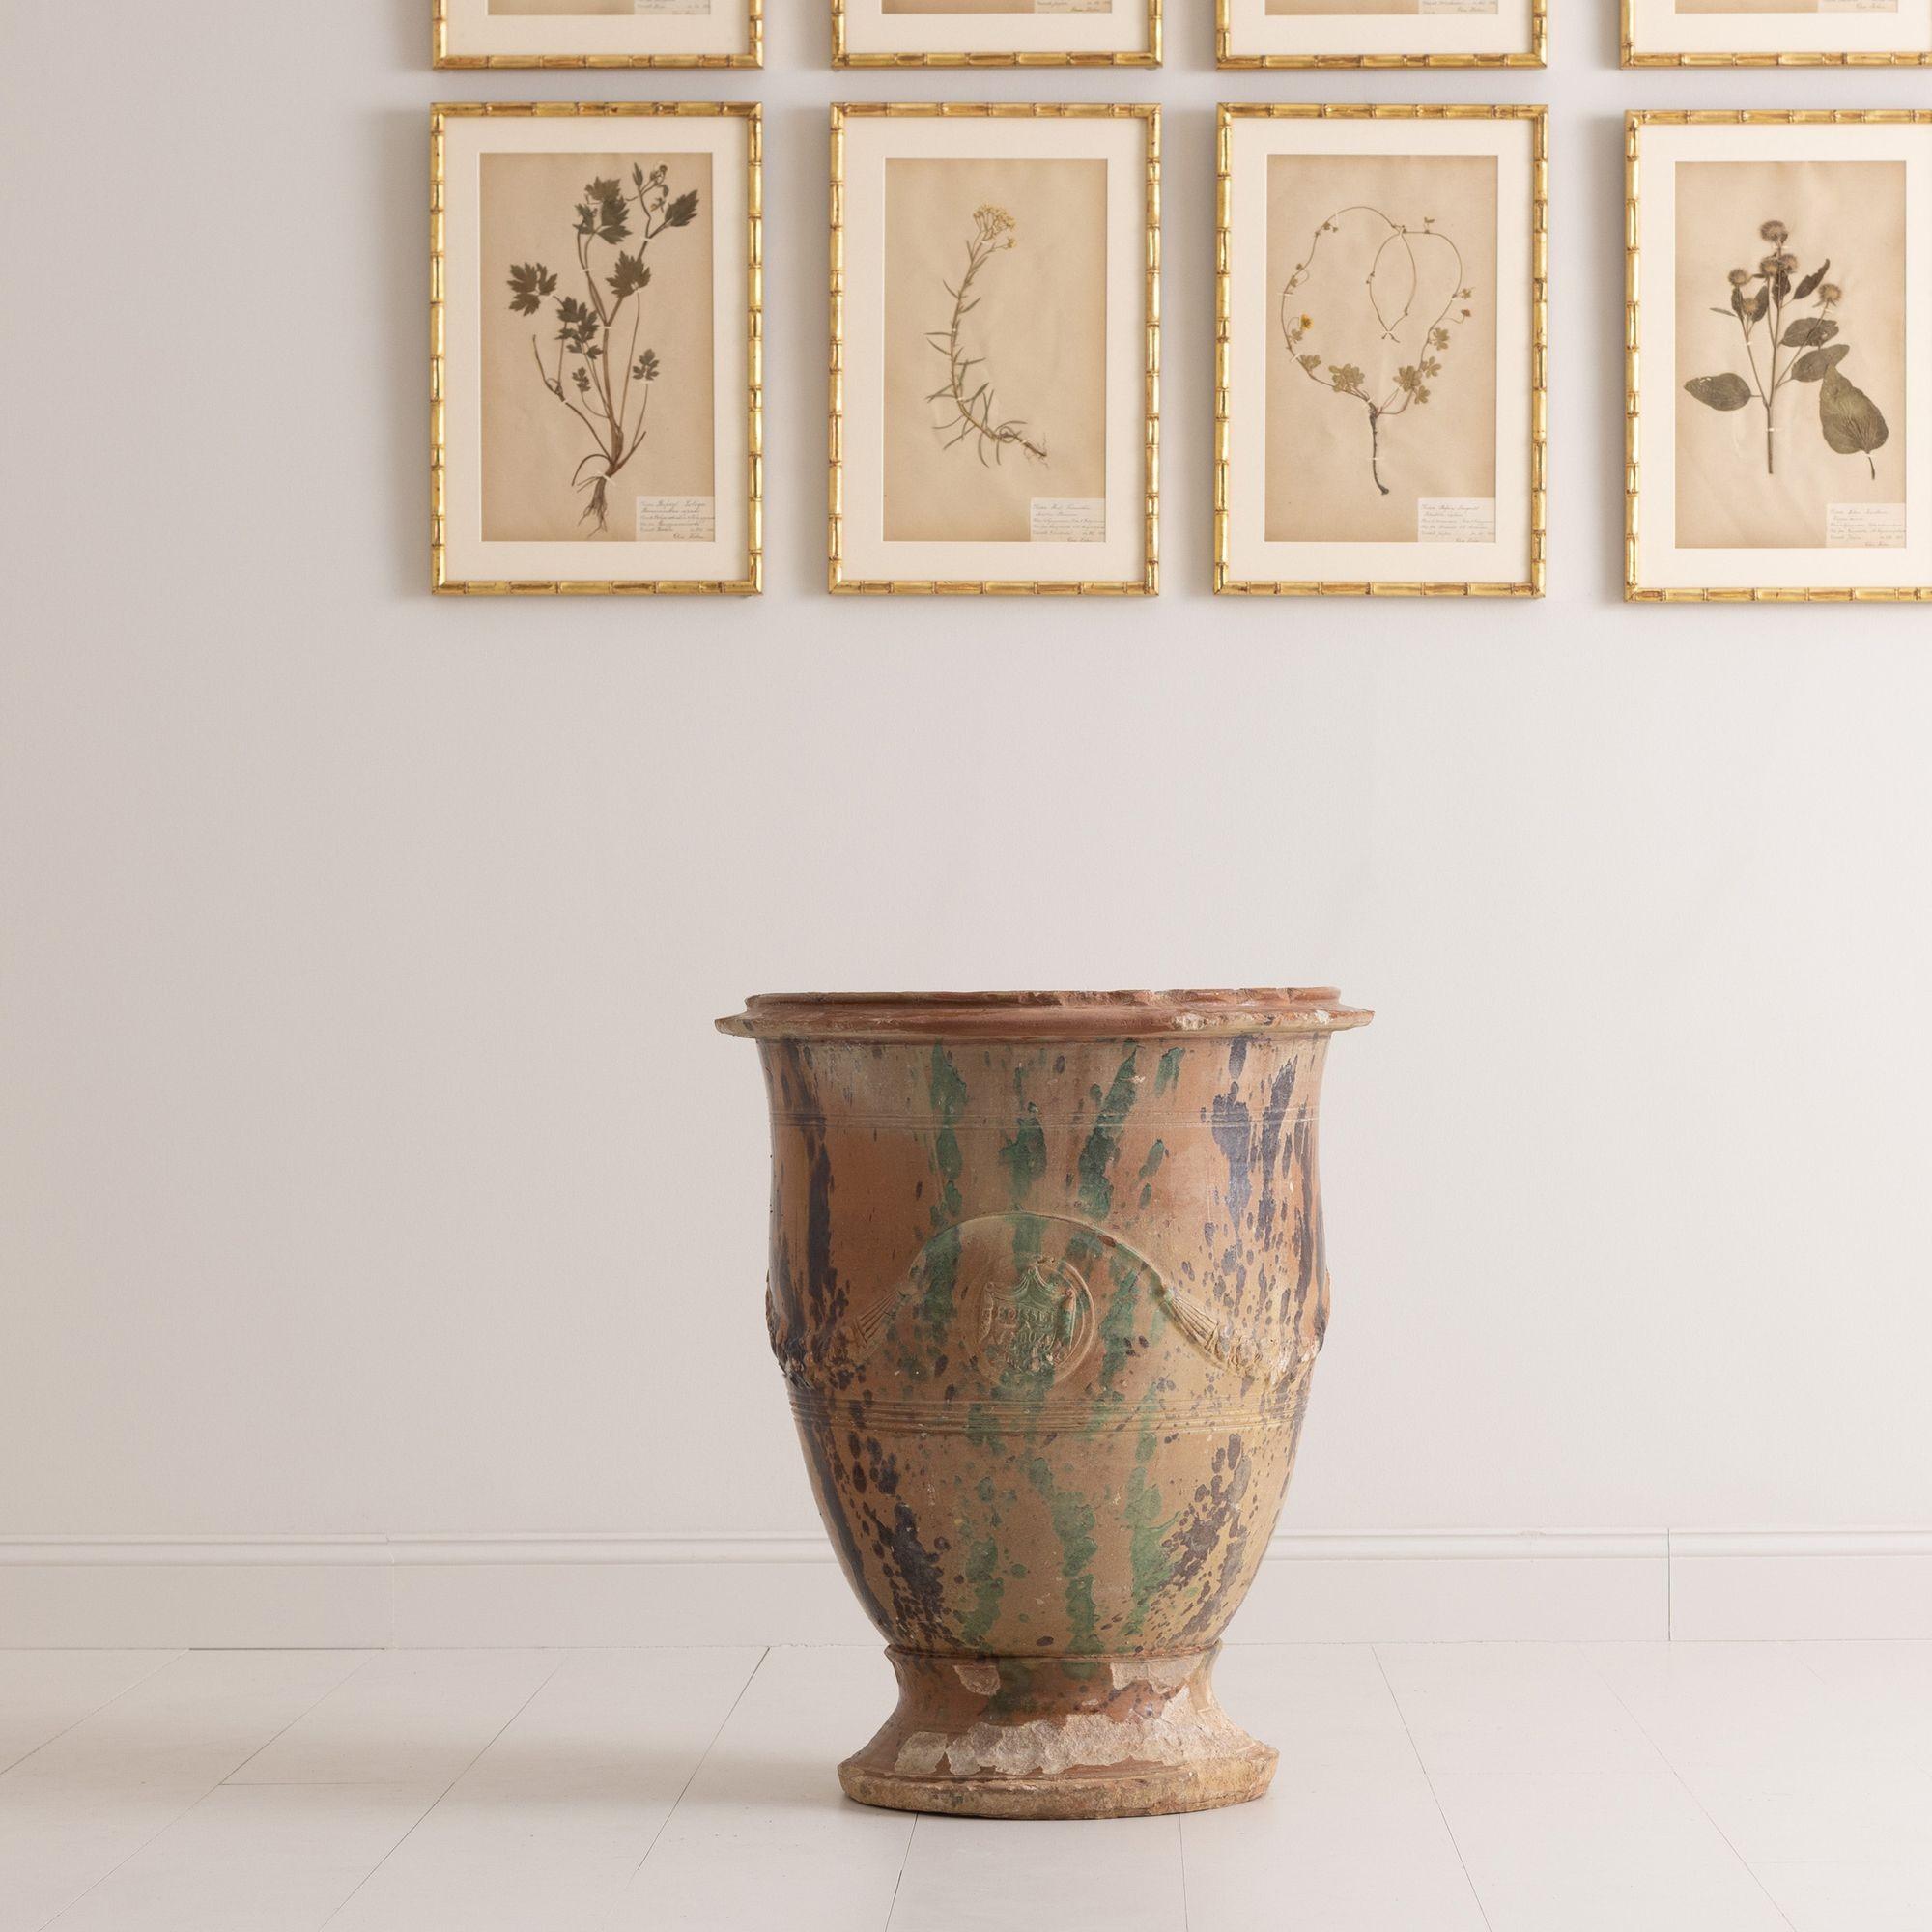 Ein großer französischer Anduze-Topf, signiert vom ursprünglichen Hersteller der Anduze-Vasen, Boisset. Gekennzeichnet mit dem Boisset-Wappen in einer Kartusche. Dieses Stück hat eine schöne, abgenutzte Glasur aus Braun, Grün und Ocker mit